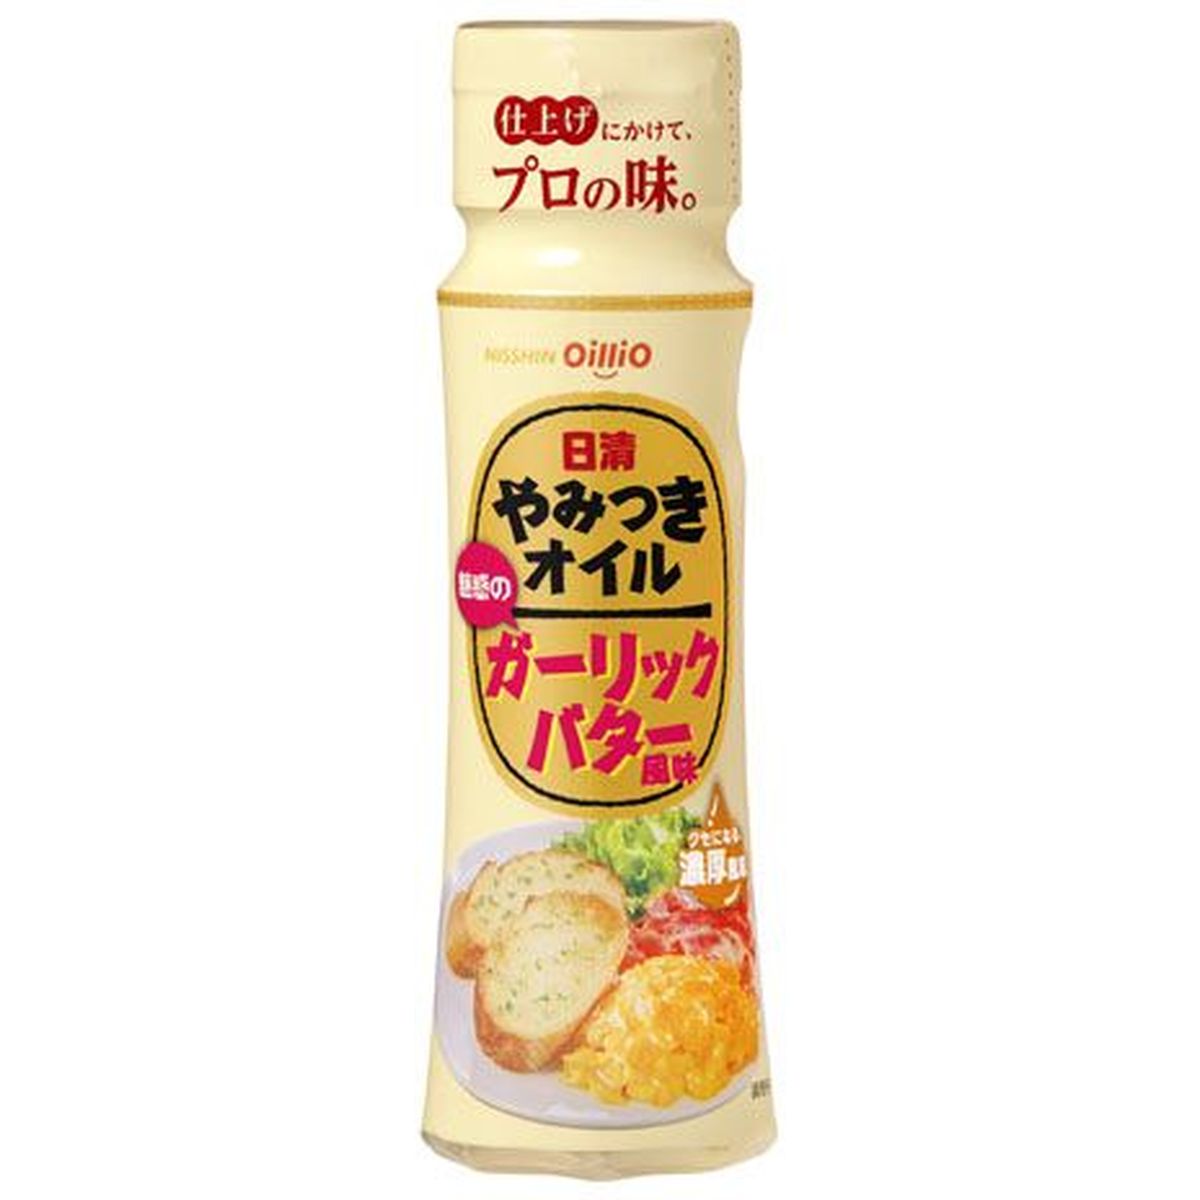 【15個入リ】日清オイリオ ヤミツキオイルガーリックバター風 100g